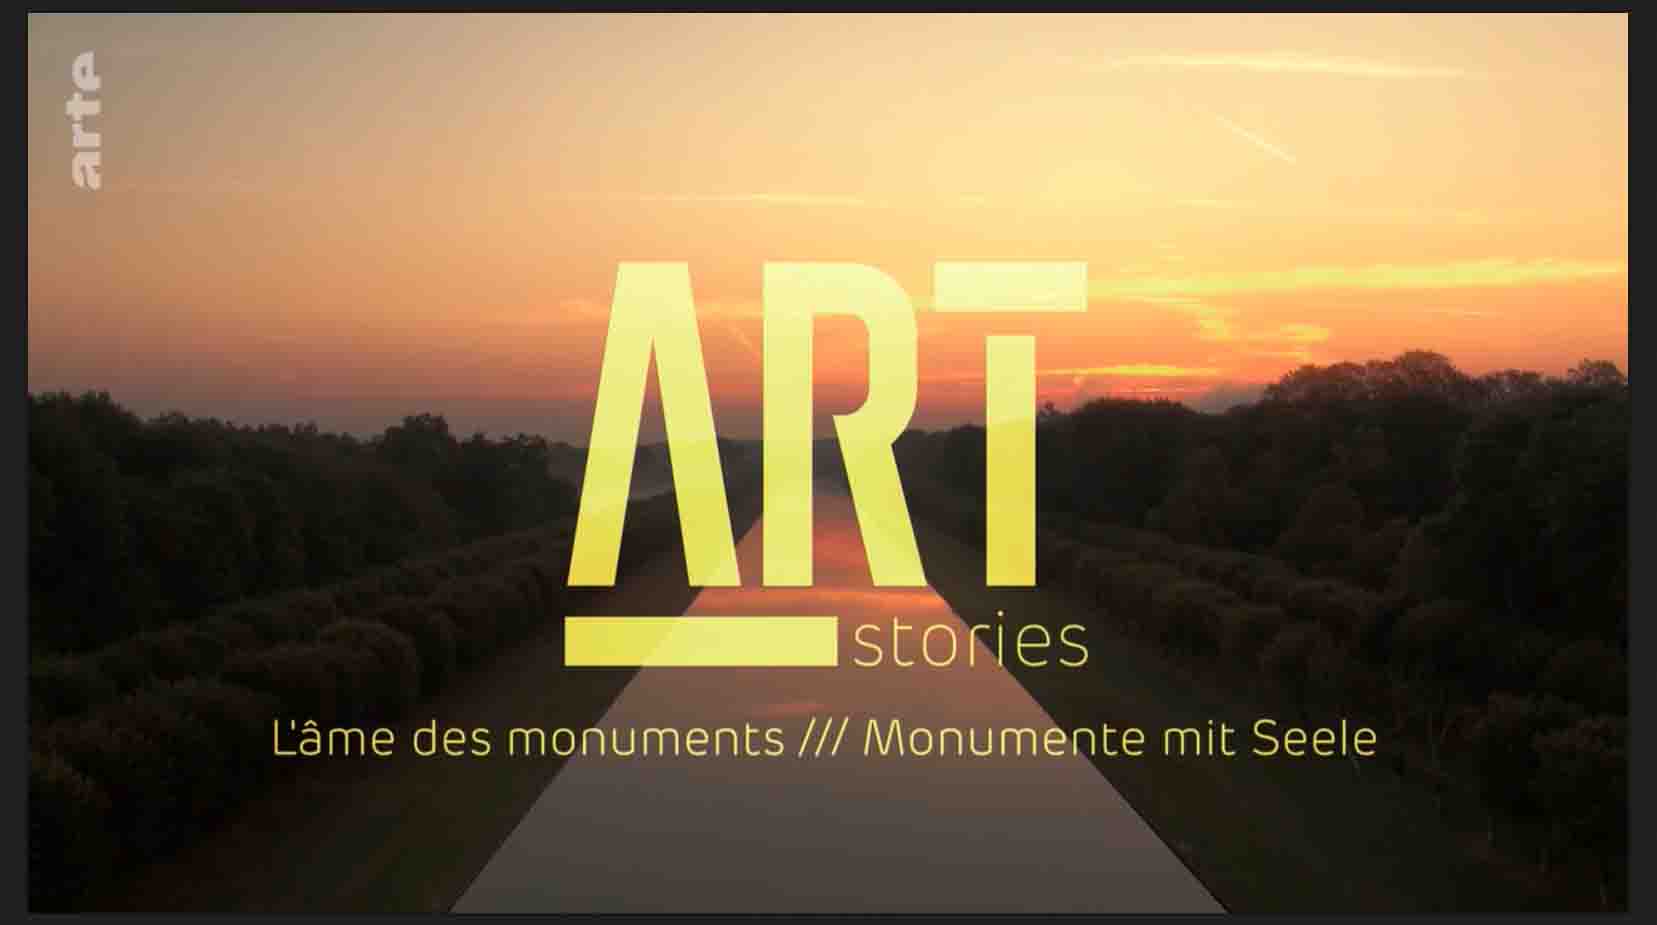 法国纪录片《艺术故事 传奇瞬间 Art stories, l’âme des monuments 2018》全5集 法语中字 1080p高清网盘下载